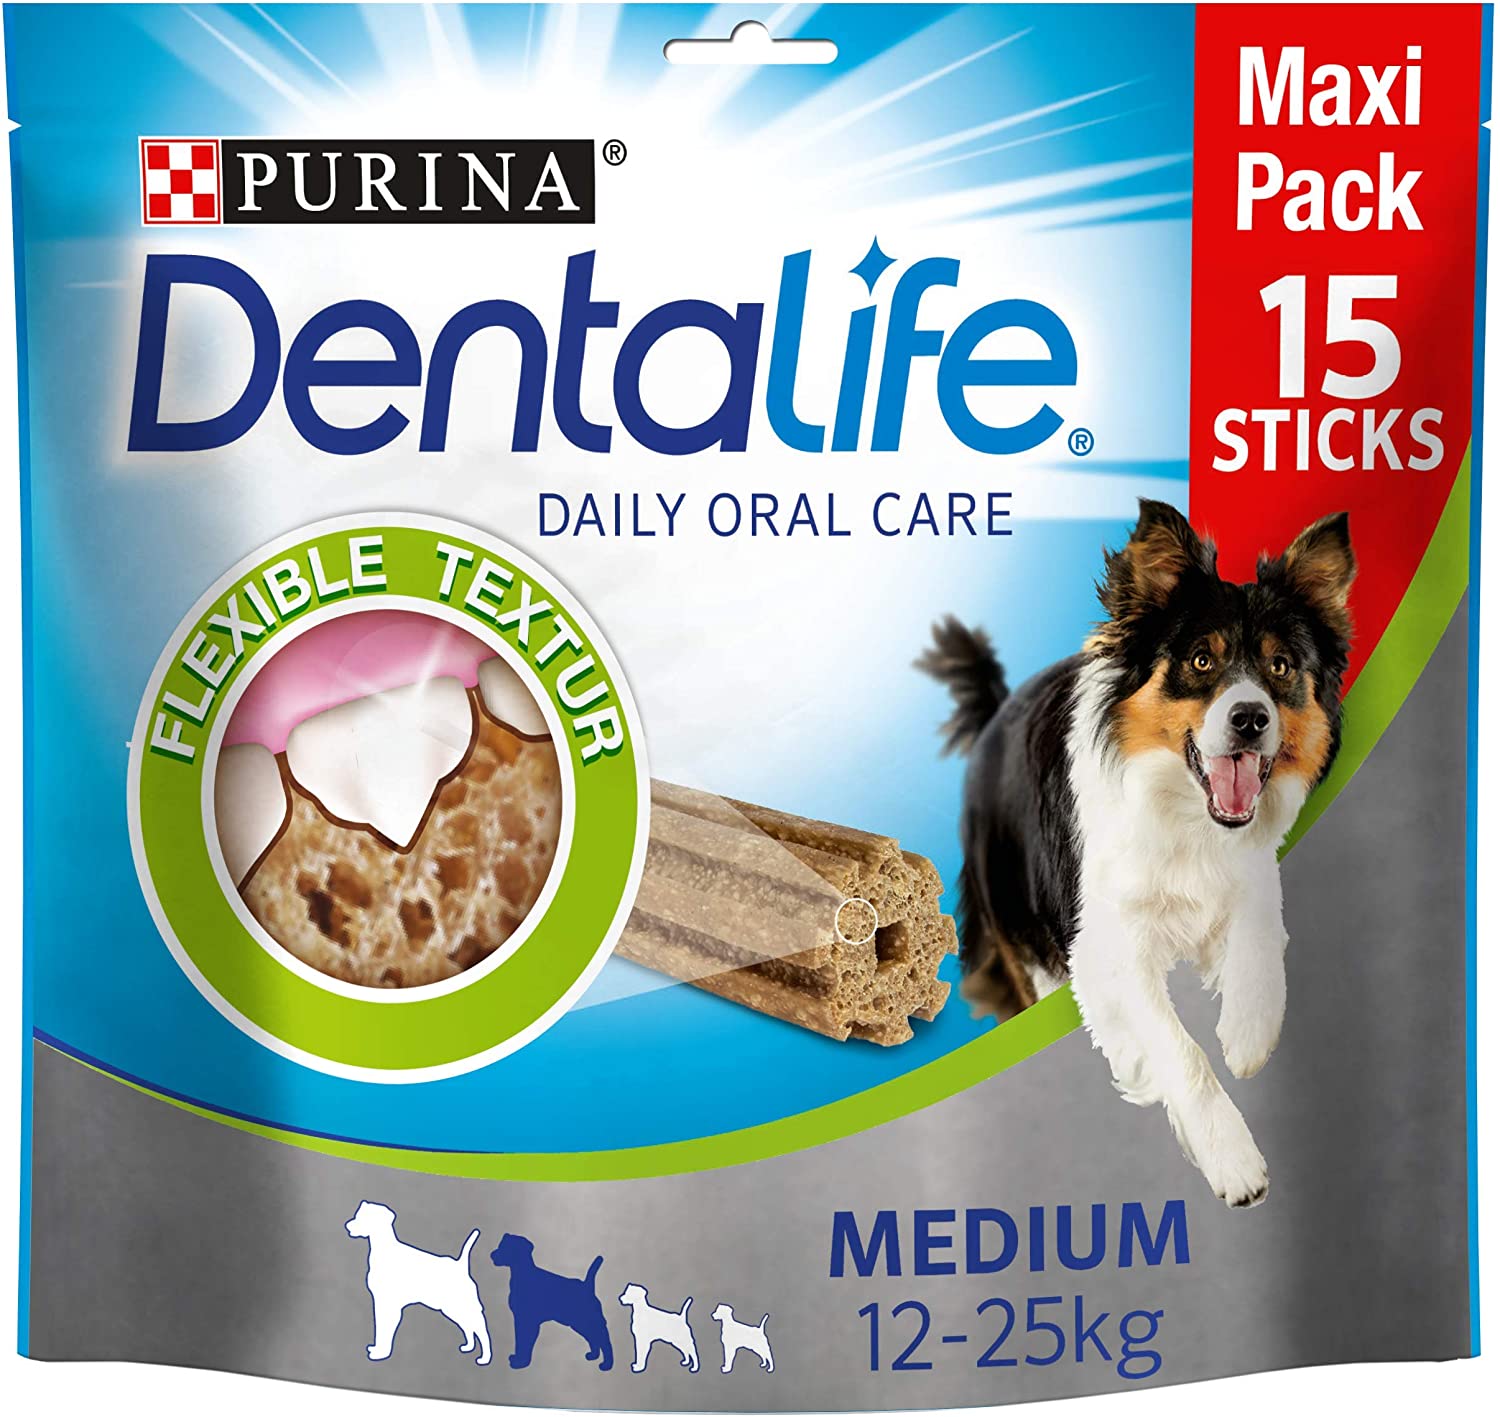  Purina DentaLife - Aperitivos de Cuidado Dental Diario para Perros 